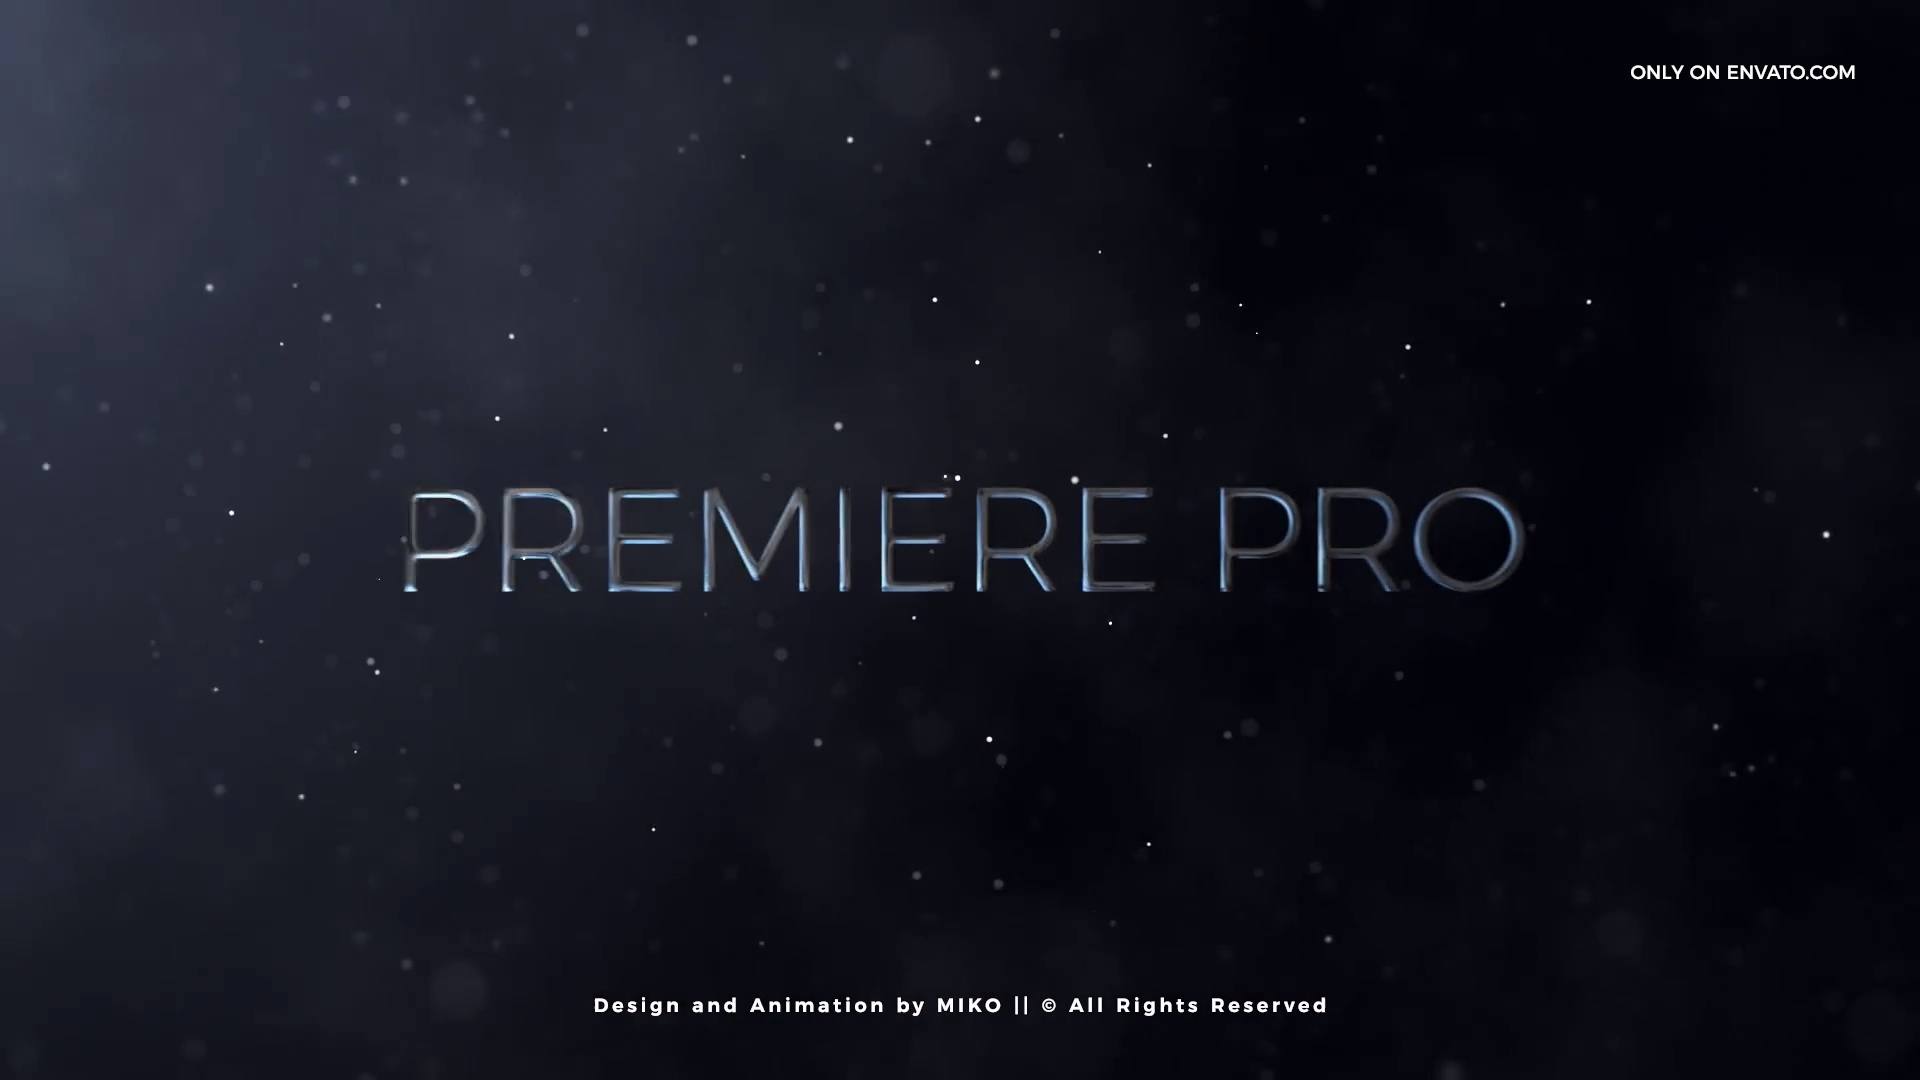 premiere pro intro template free download